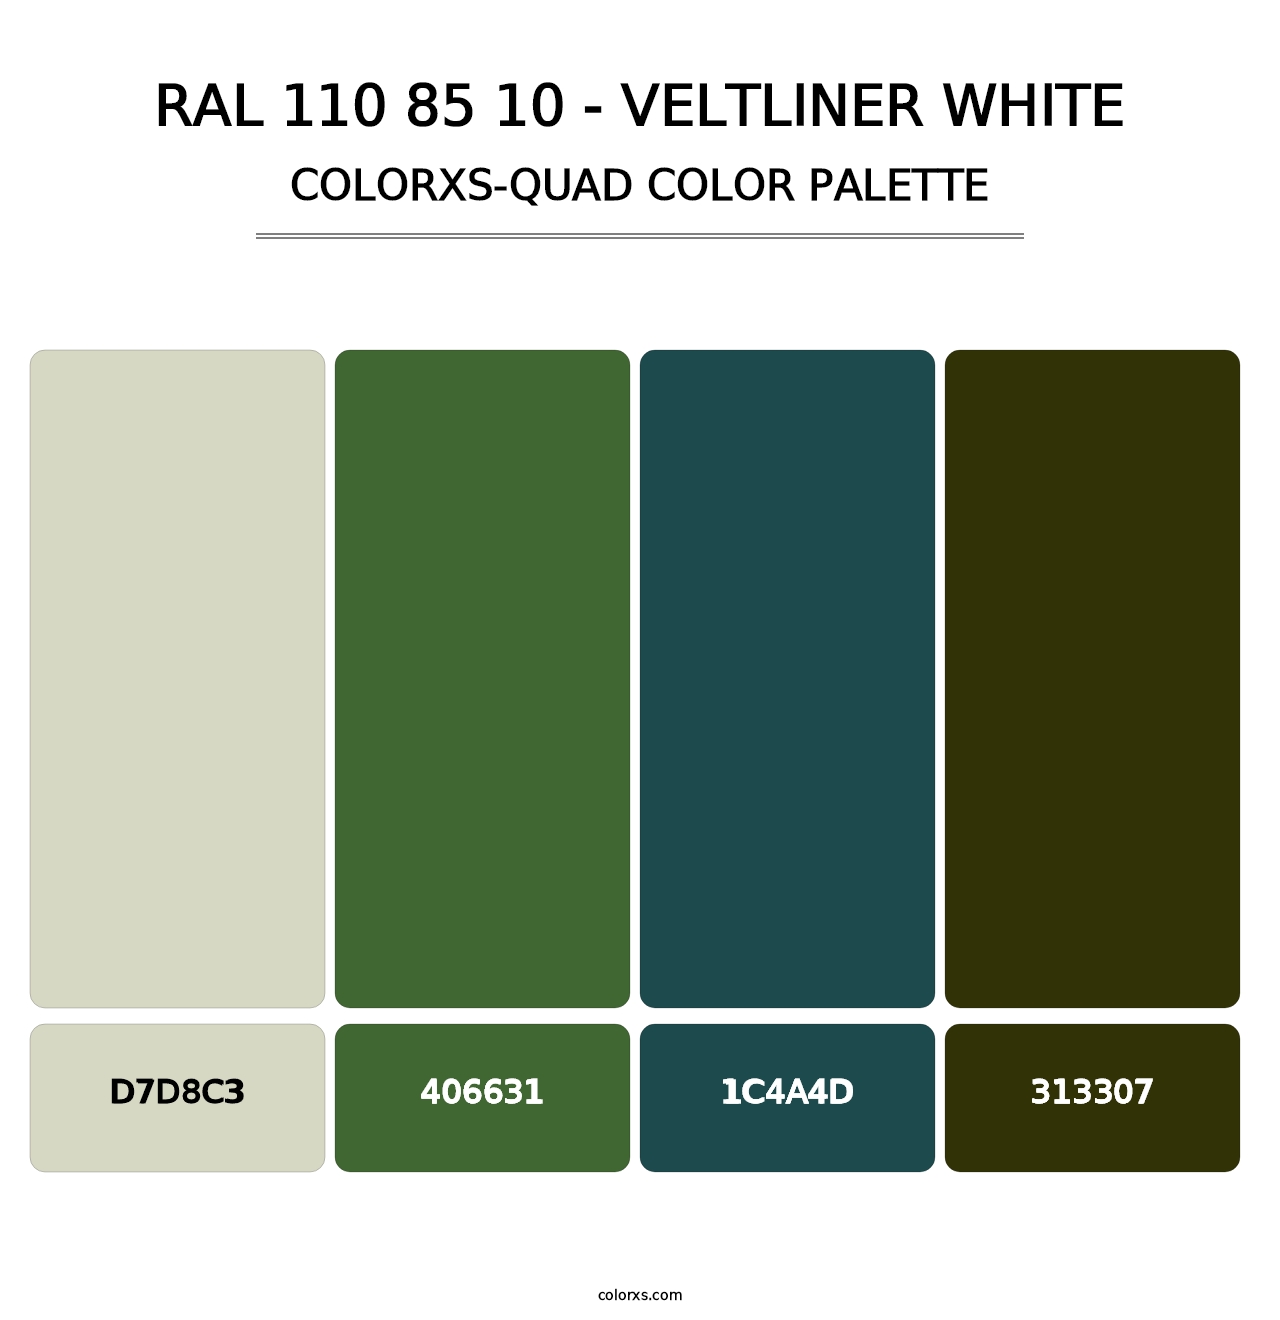 RAL 110 85 10 - Veltliner White - Colorxs Quad Palette